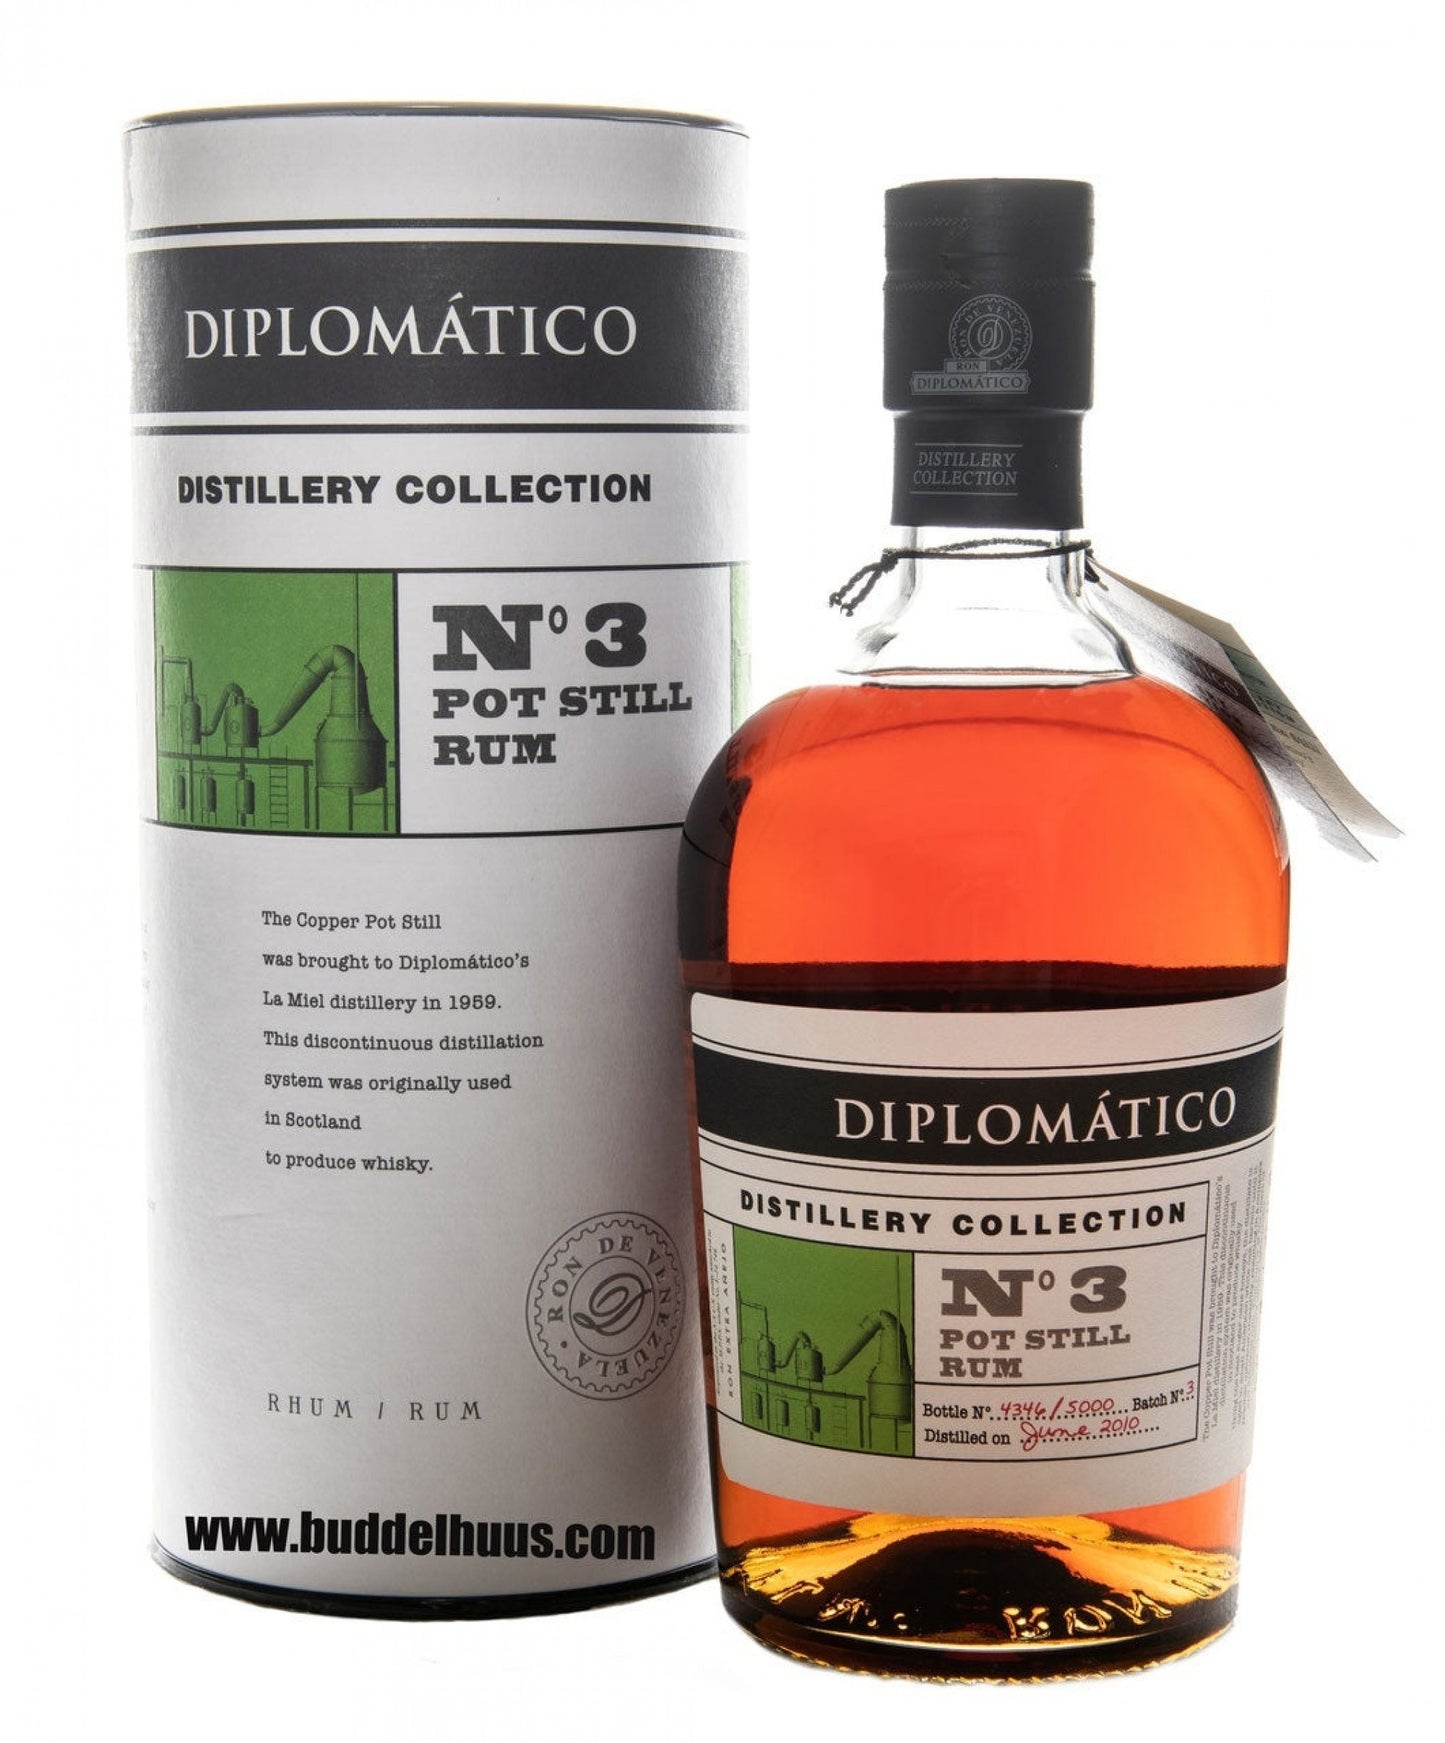 Diplomatico Distillery Collection No 3 Pot Still